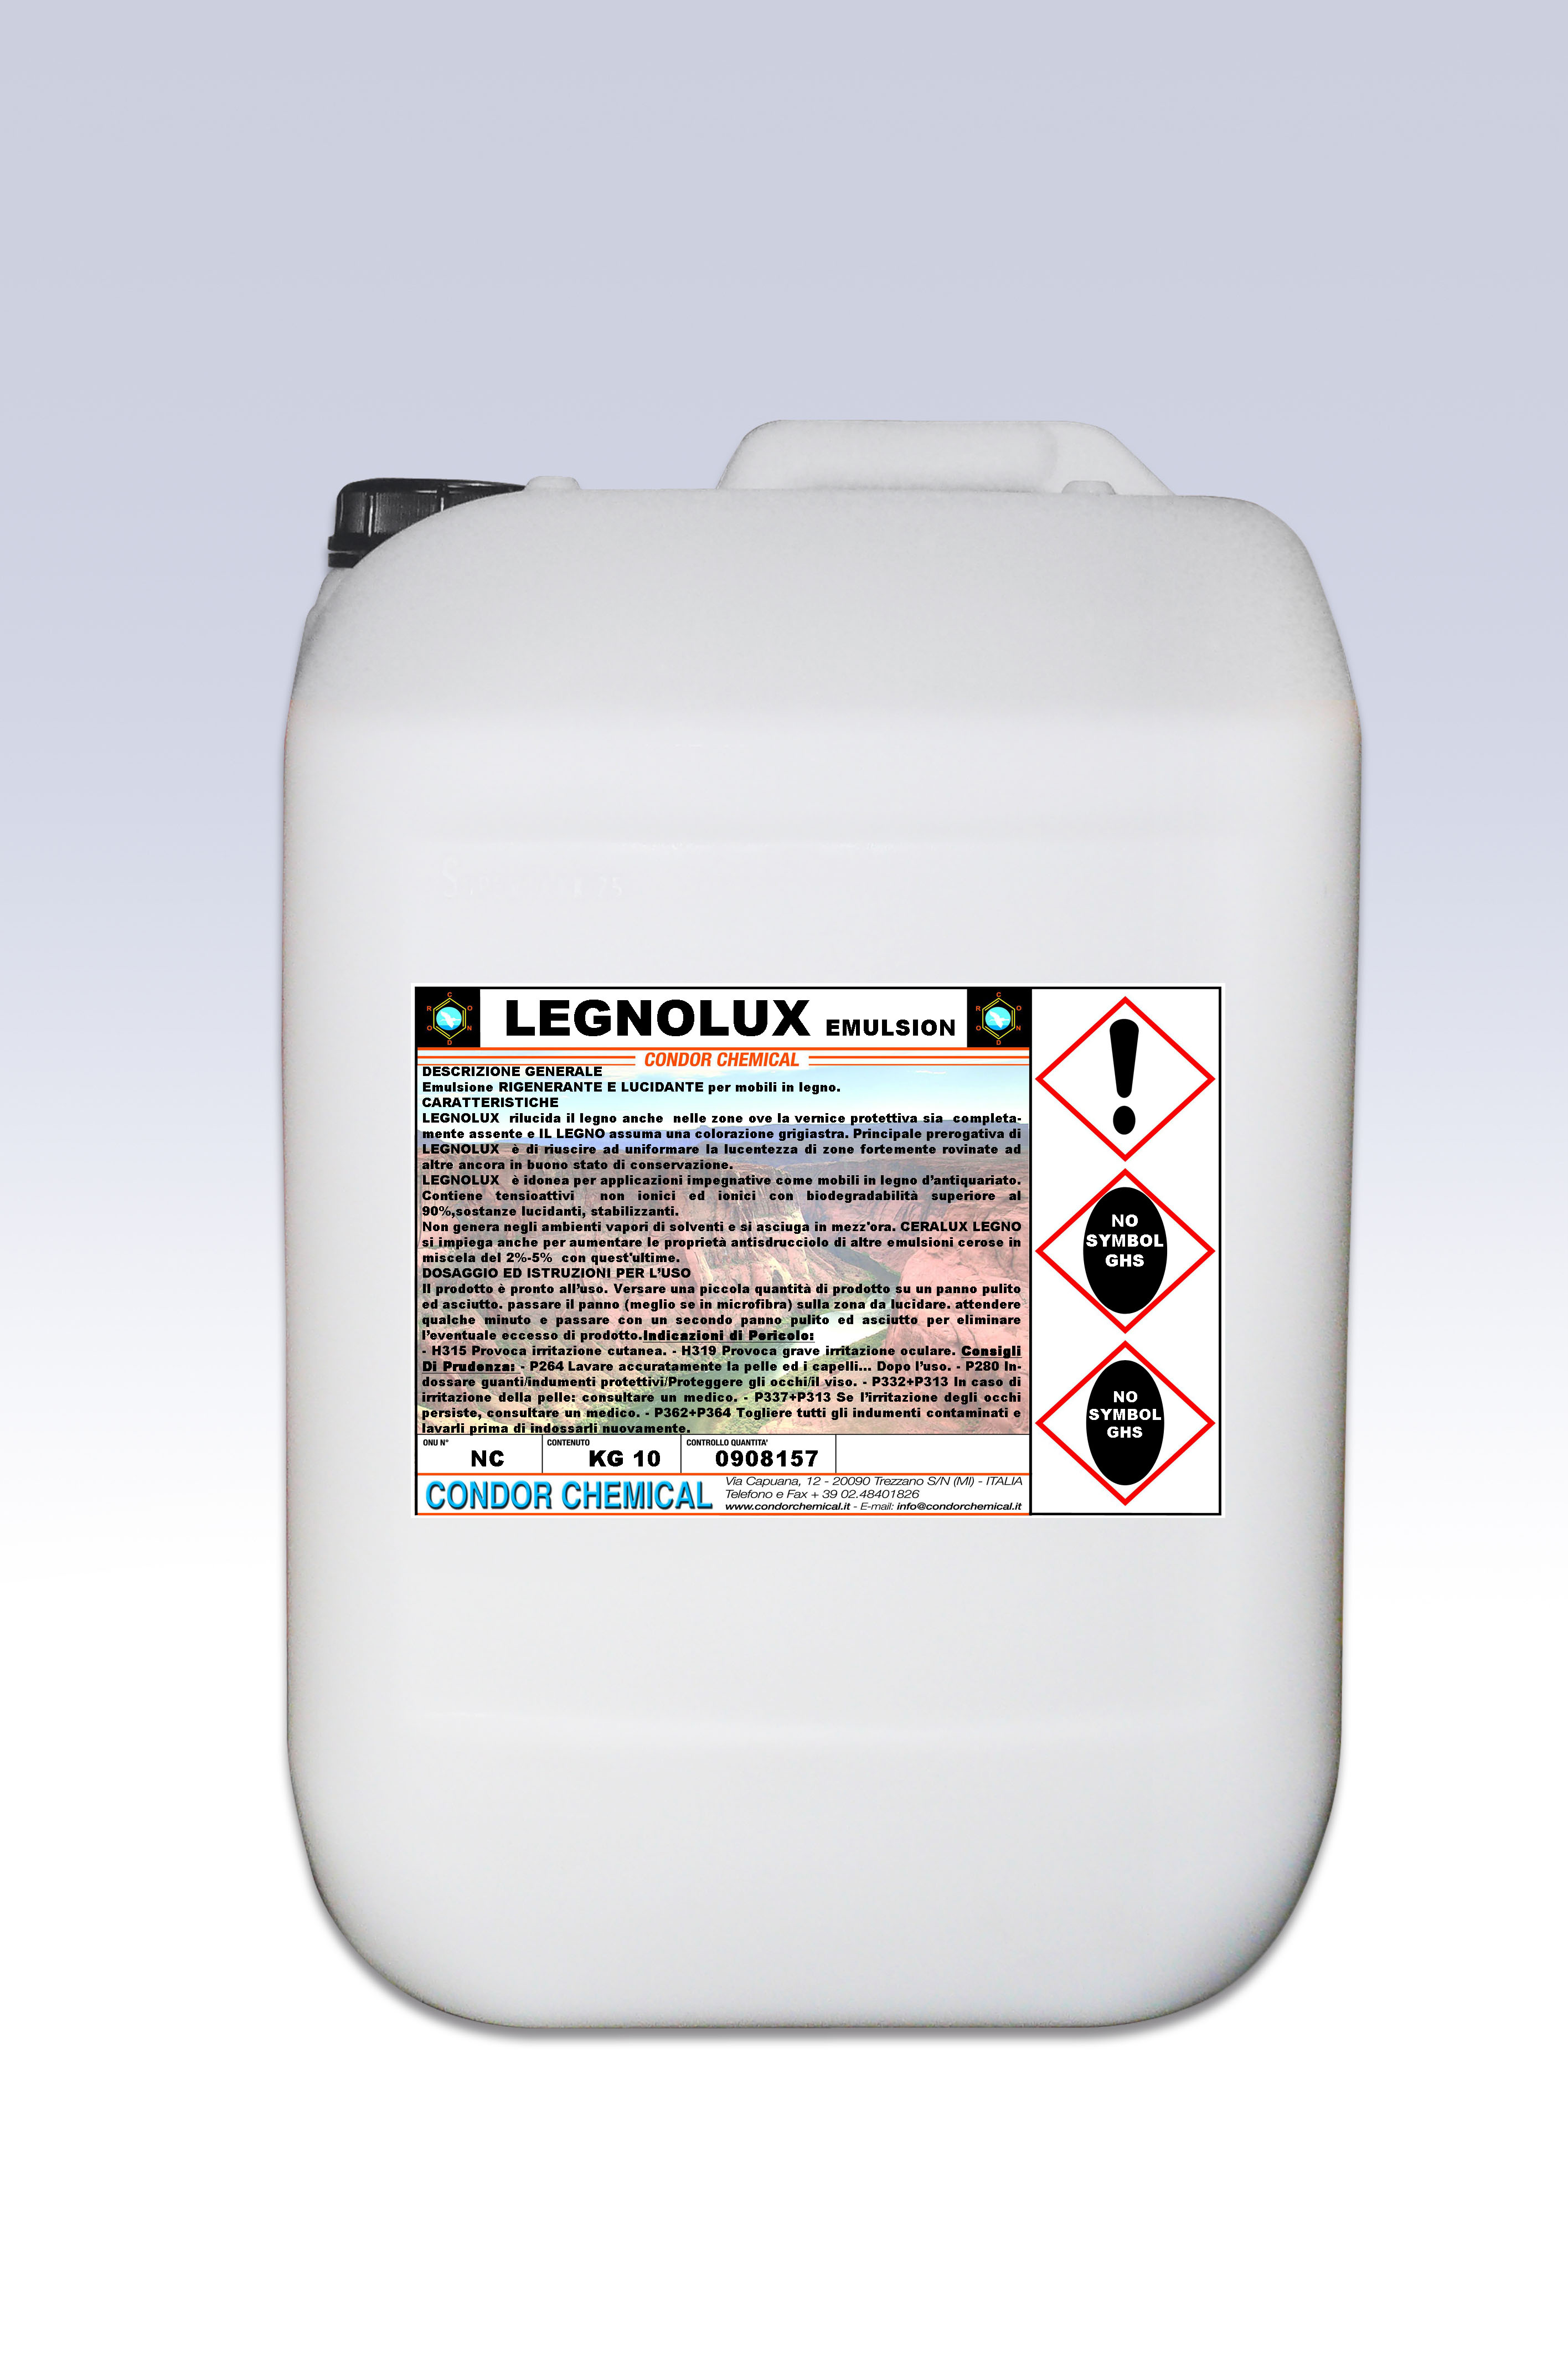 Legnolux Emulsion